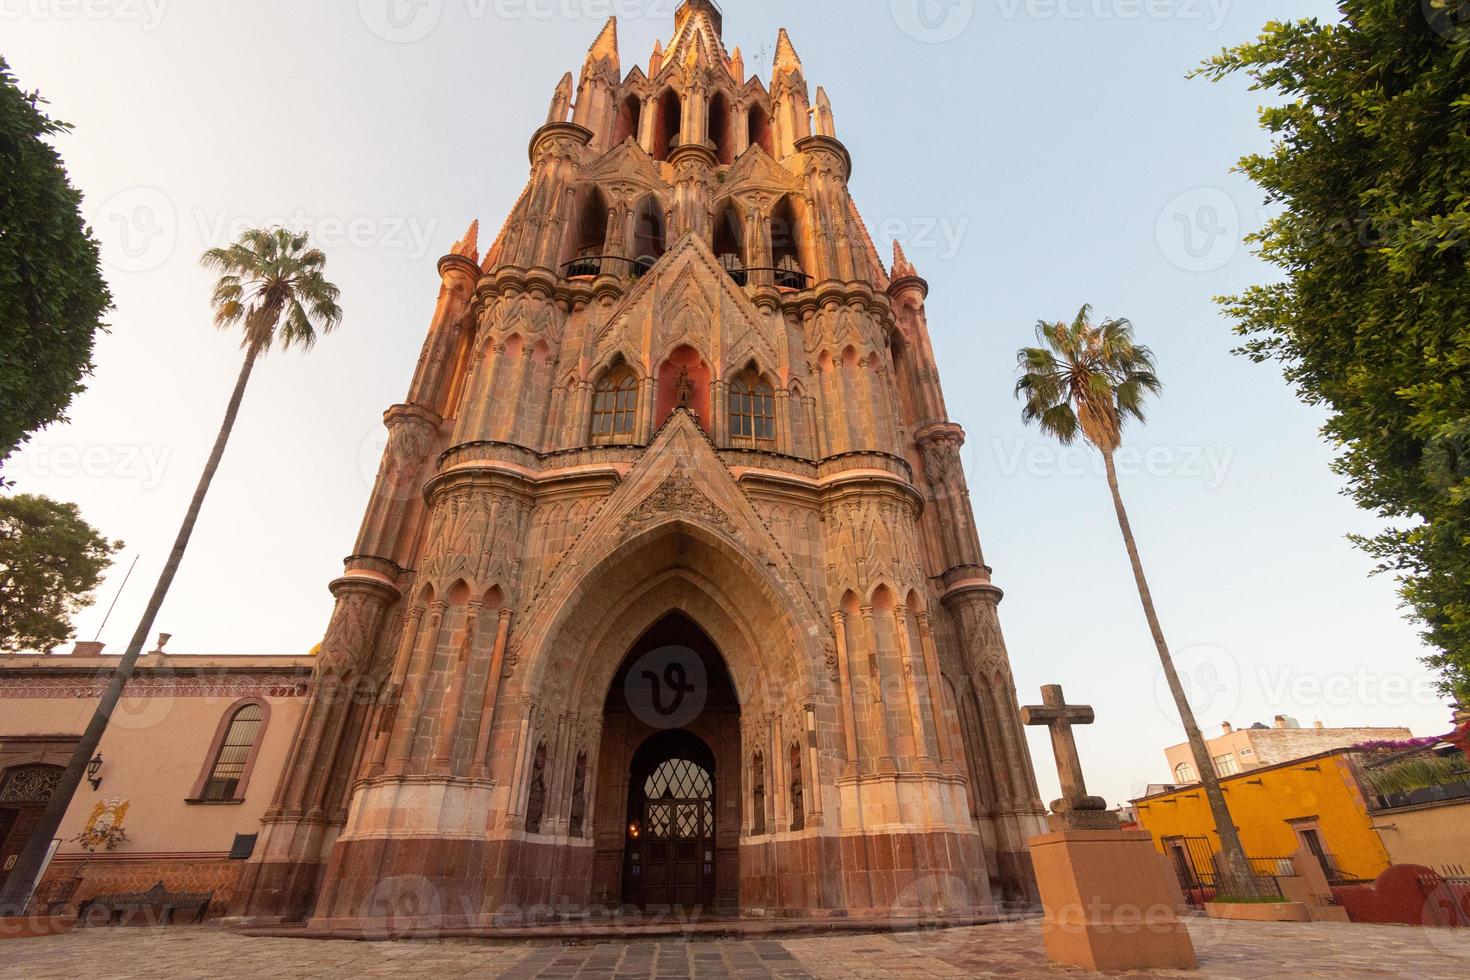 parroquia arcangel iglesia jardin plaza del pueblo rafael chruch san miguel de allende, mexico. parroaguia creada en 1600 foto